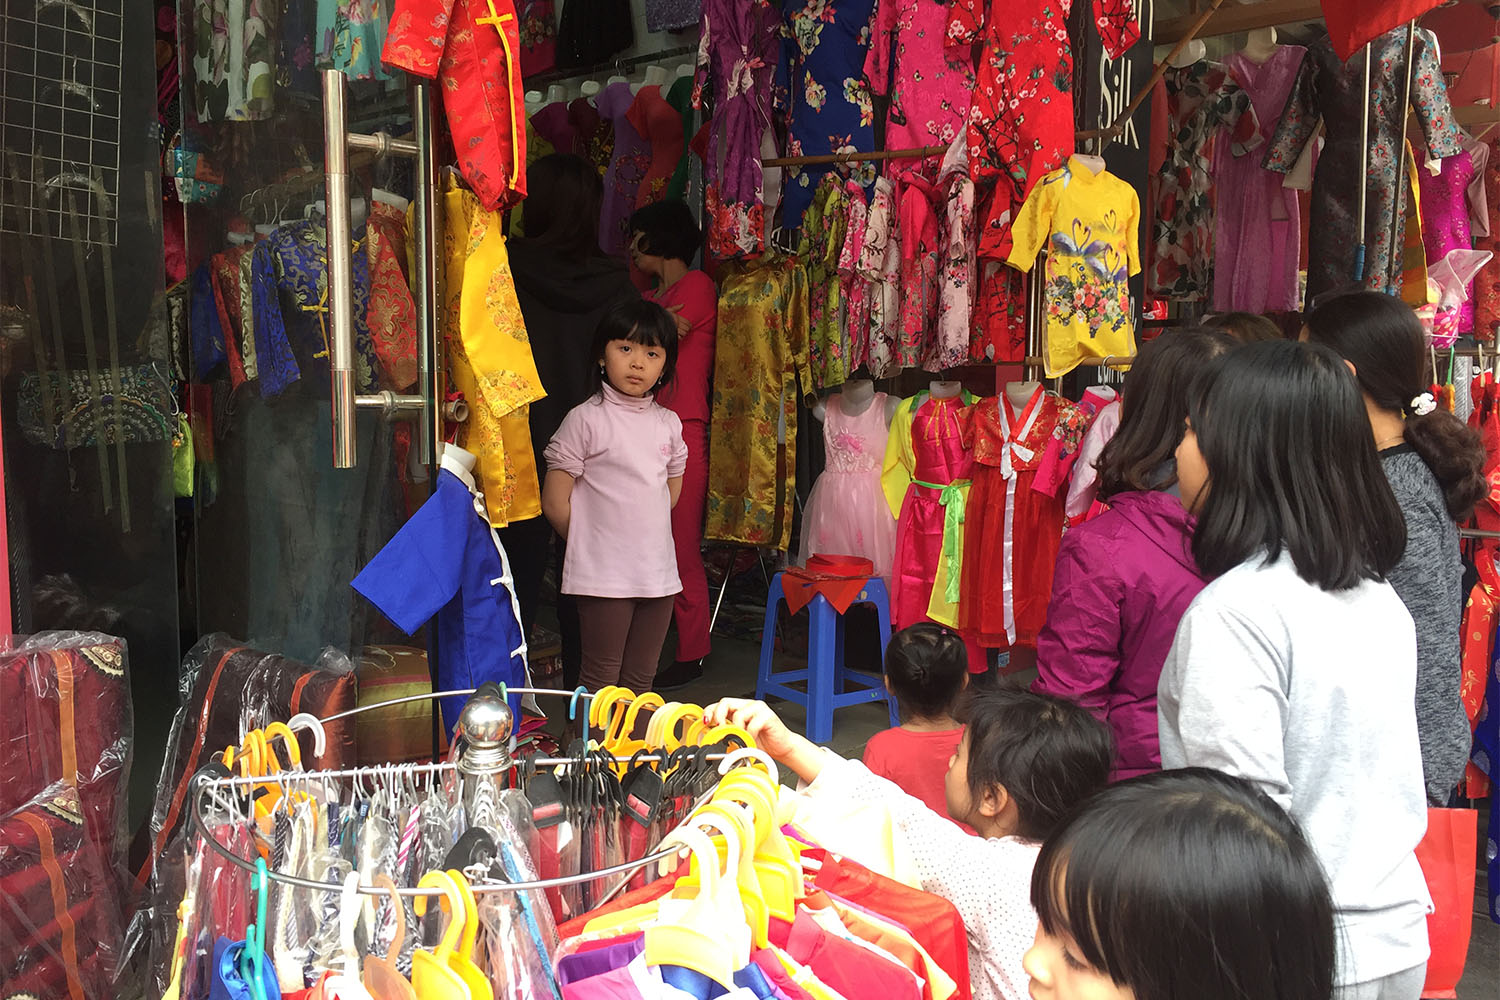 A l’approche du Têt, de nombreux Vietnamiens font les magasins, pour acheter de nouveaux habits, notamment aux enfants.